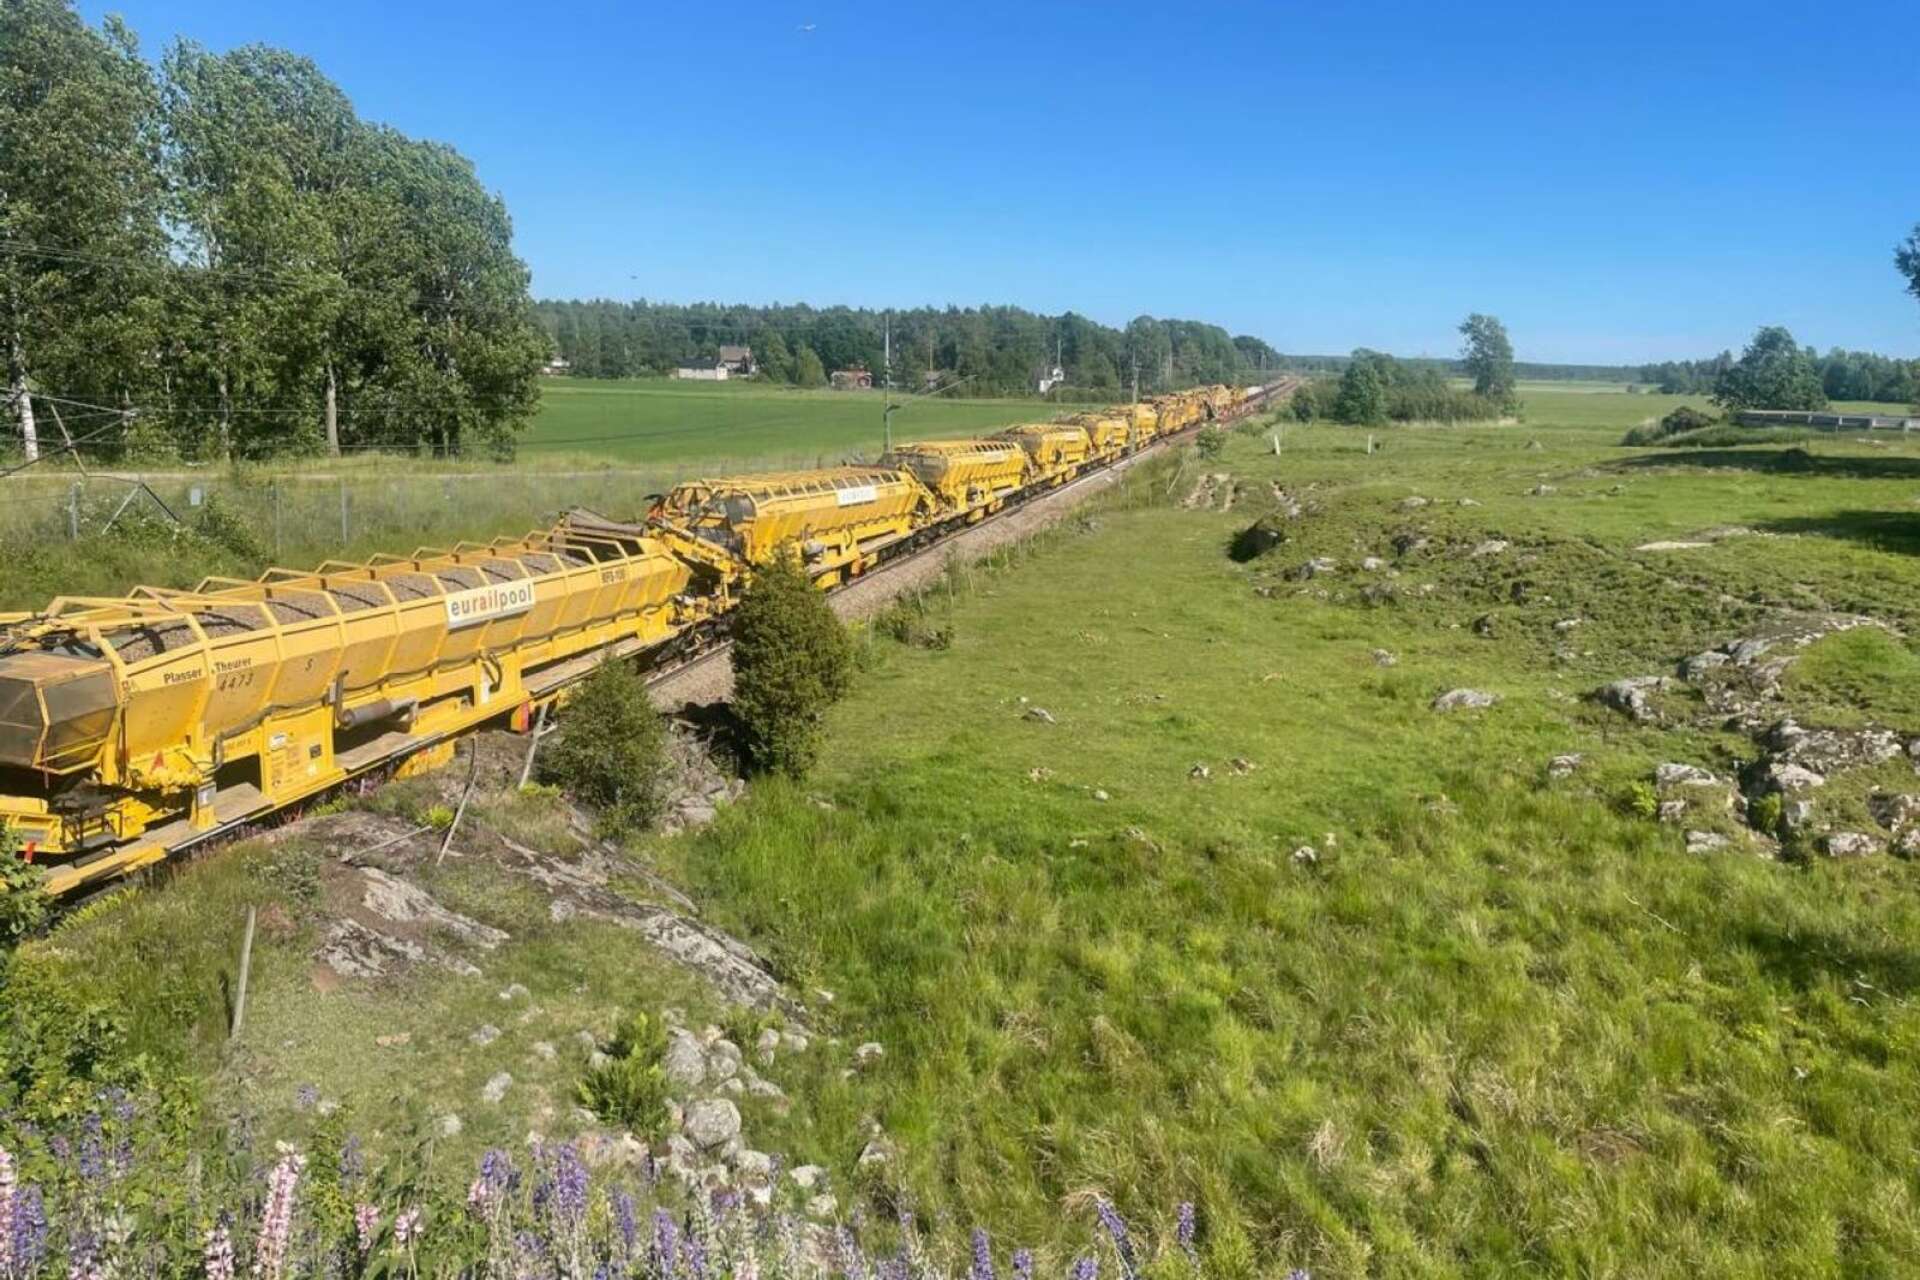 Så här ser det 800-900 meter långa specialtåget ut som genomför alla moment i spårbytet. Det inleder sitt arbete i Karlstad den 13 september.